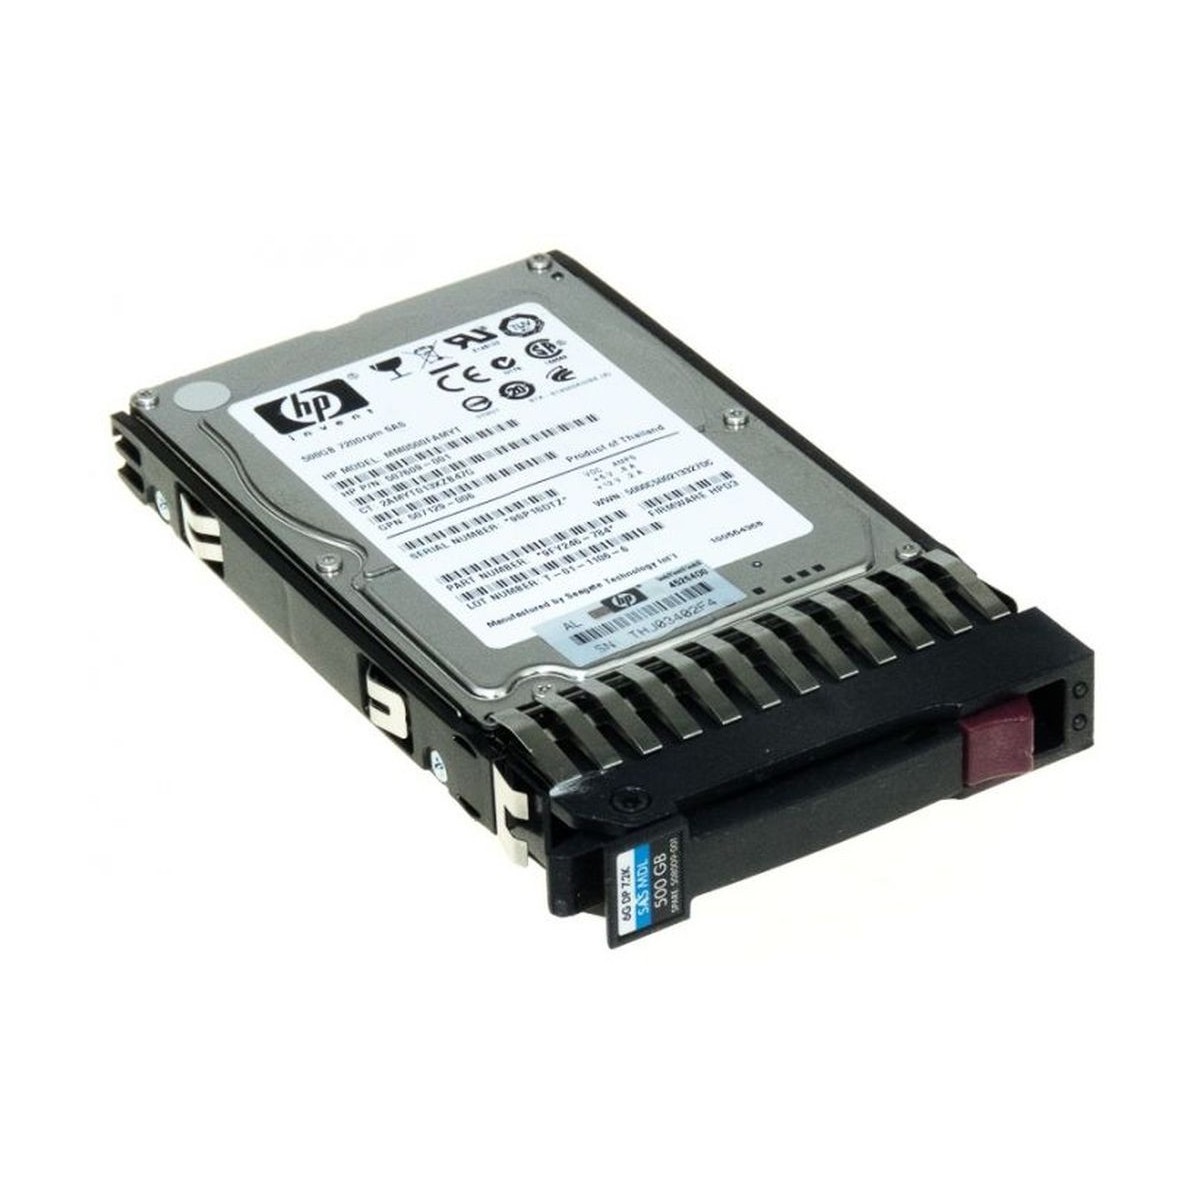 HP 500GB SAS 7.2K 6G 2,5 RAMKA 605832-001